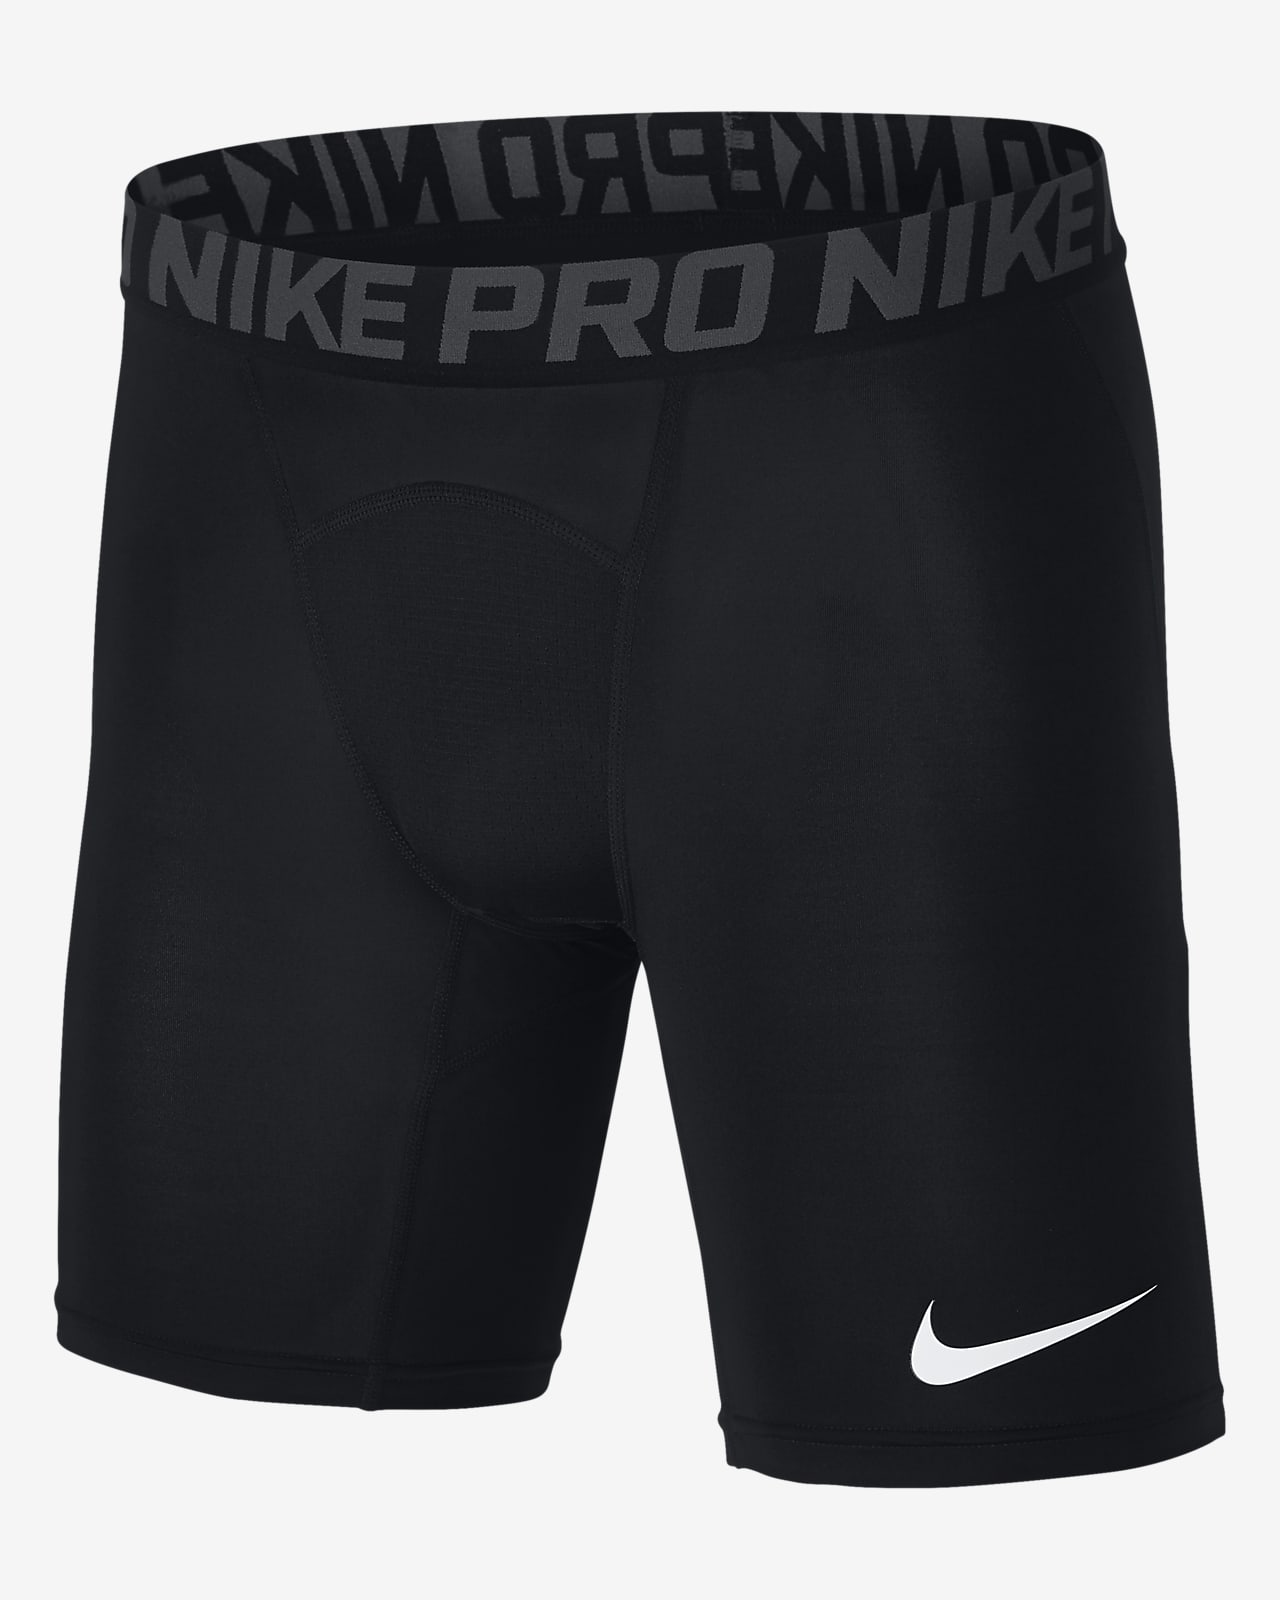 Training Shorts. Nike ID